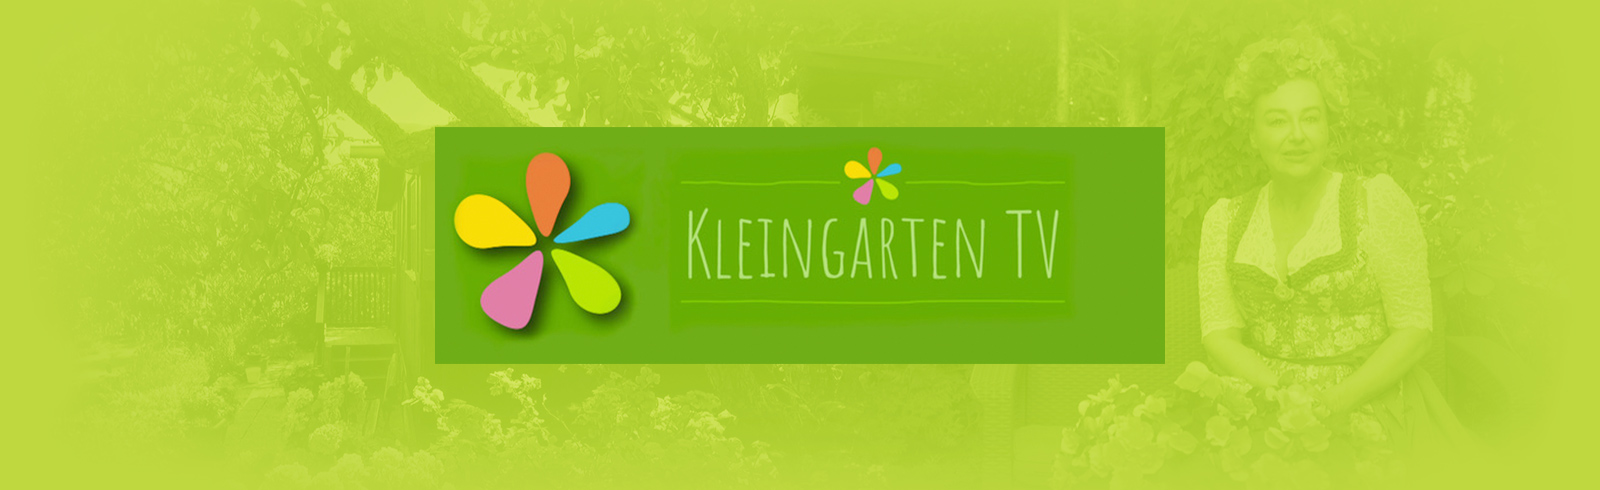 Kleingarten TV